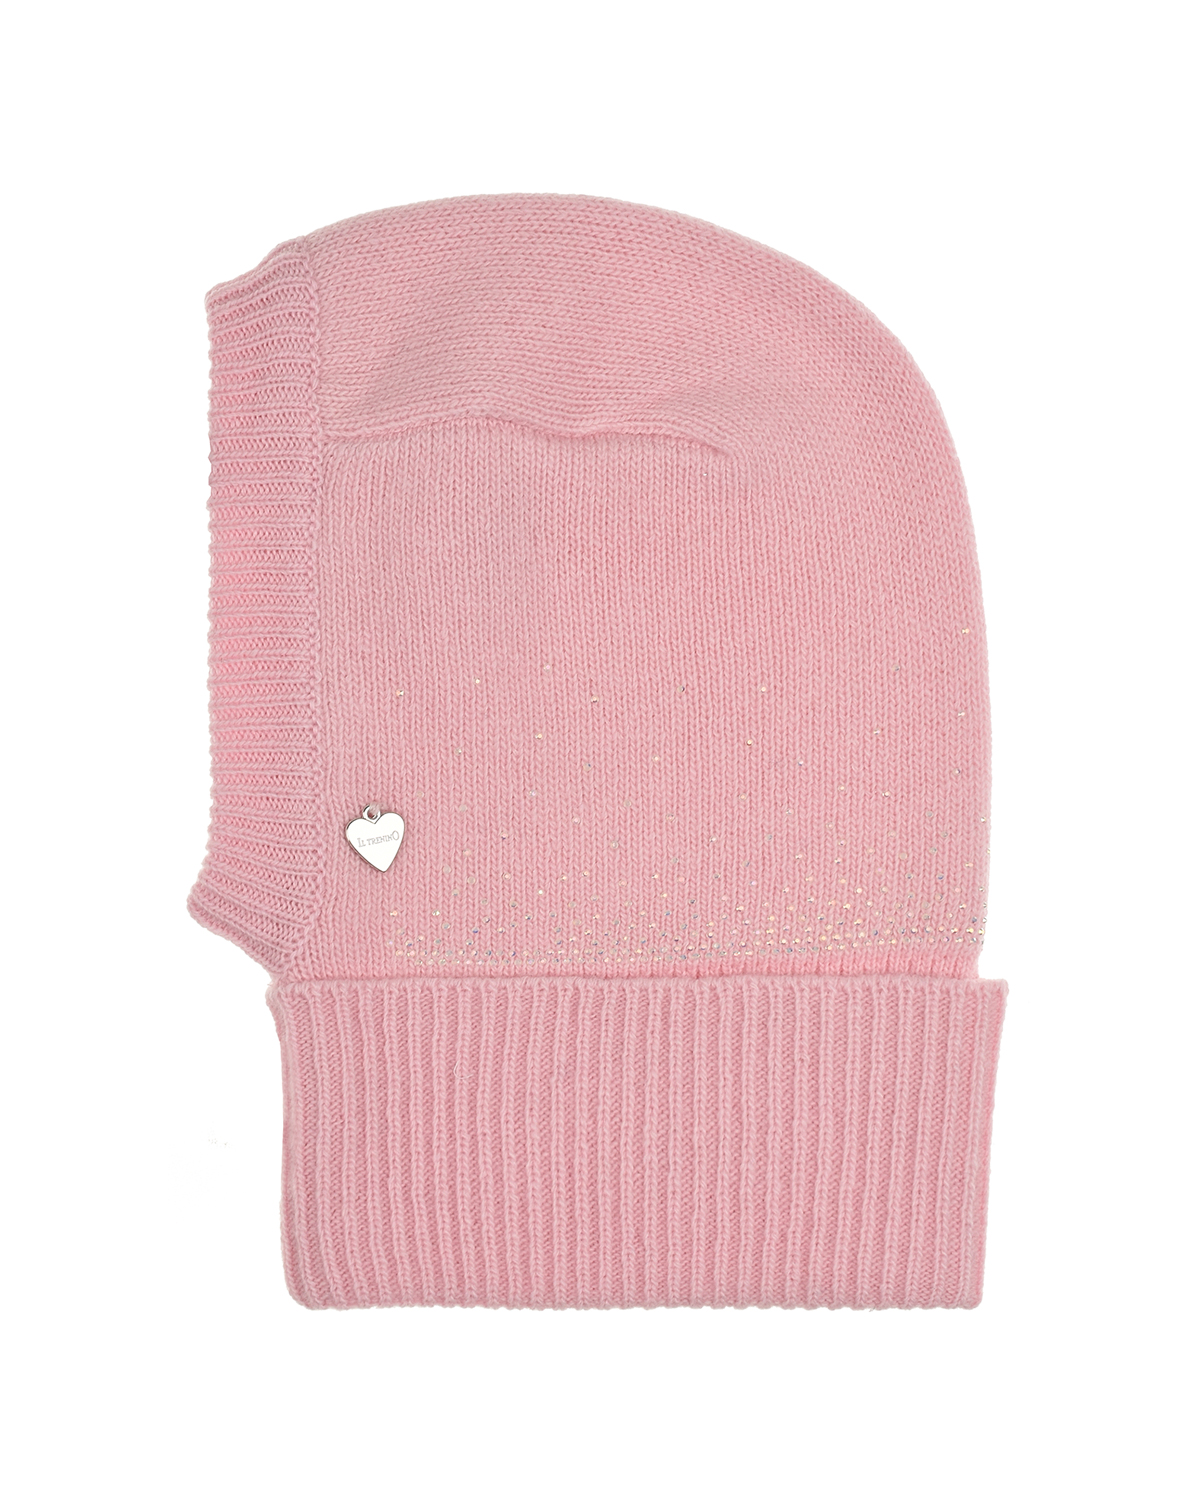 Розовая шапка-шлем со стразами Il Trenino детская, размер 45/47, цвет розовый